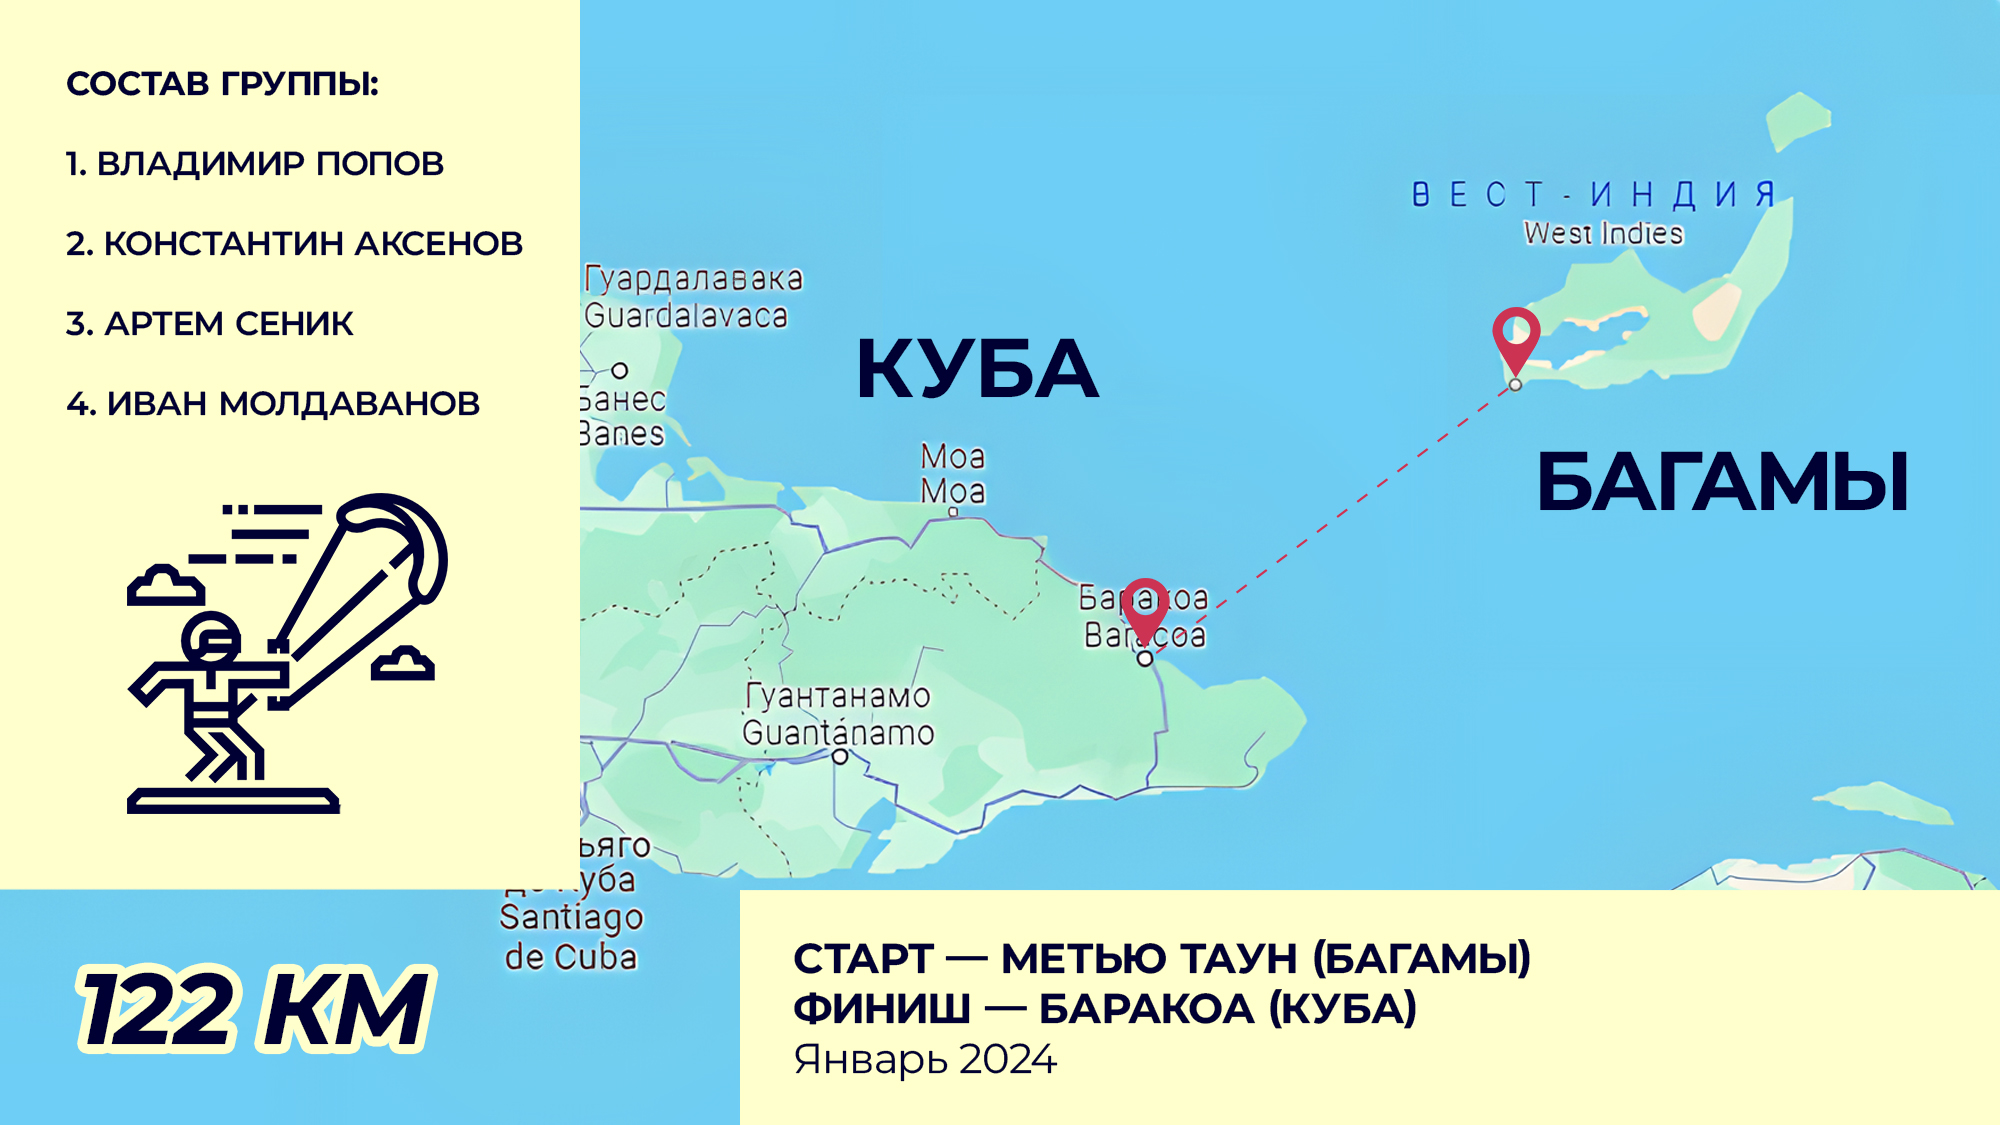 Российские кайтсерферы установят новый рекорд: в январе состоится кайт-переход от Багам до Кубы - фото 1